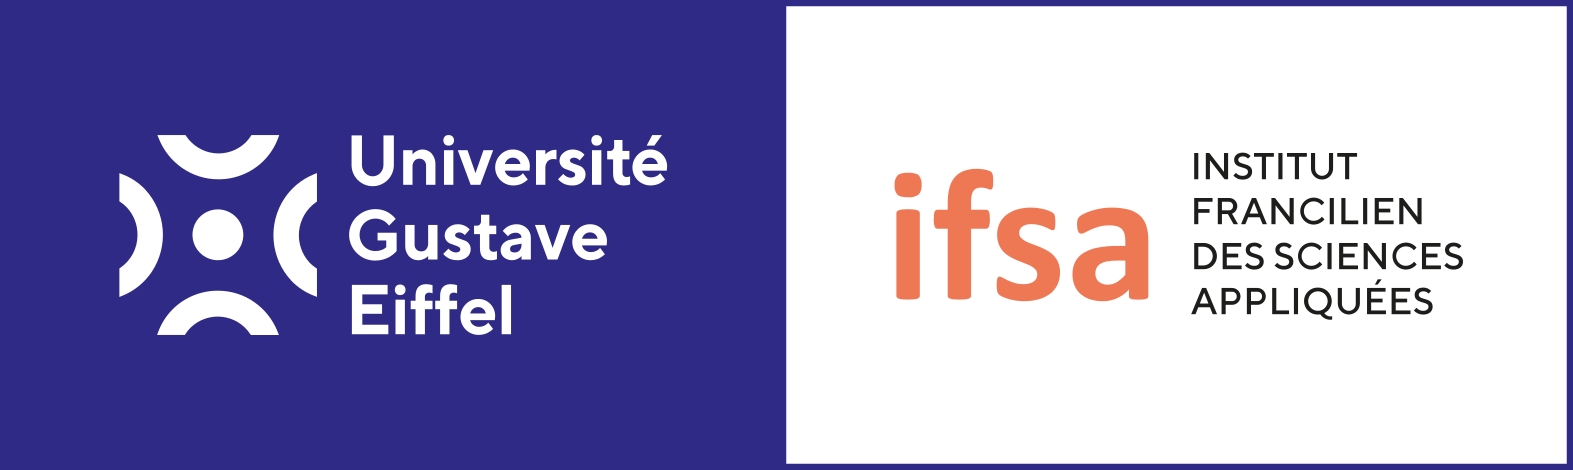 Institut Francilien des Sciences Appliquées (IFSA)